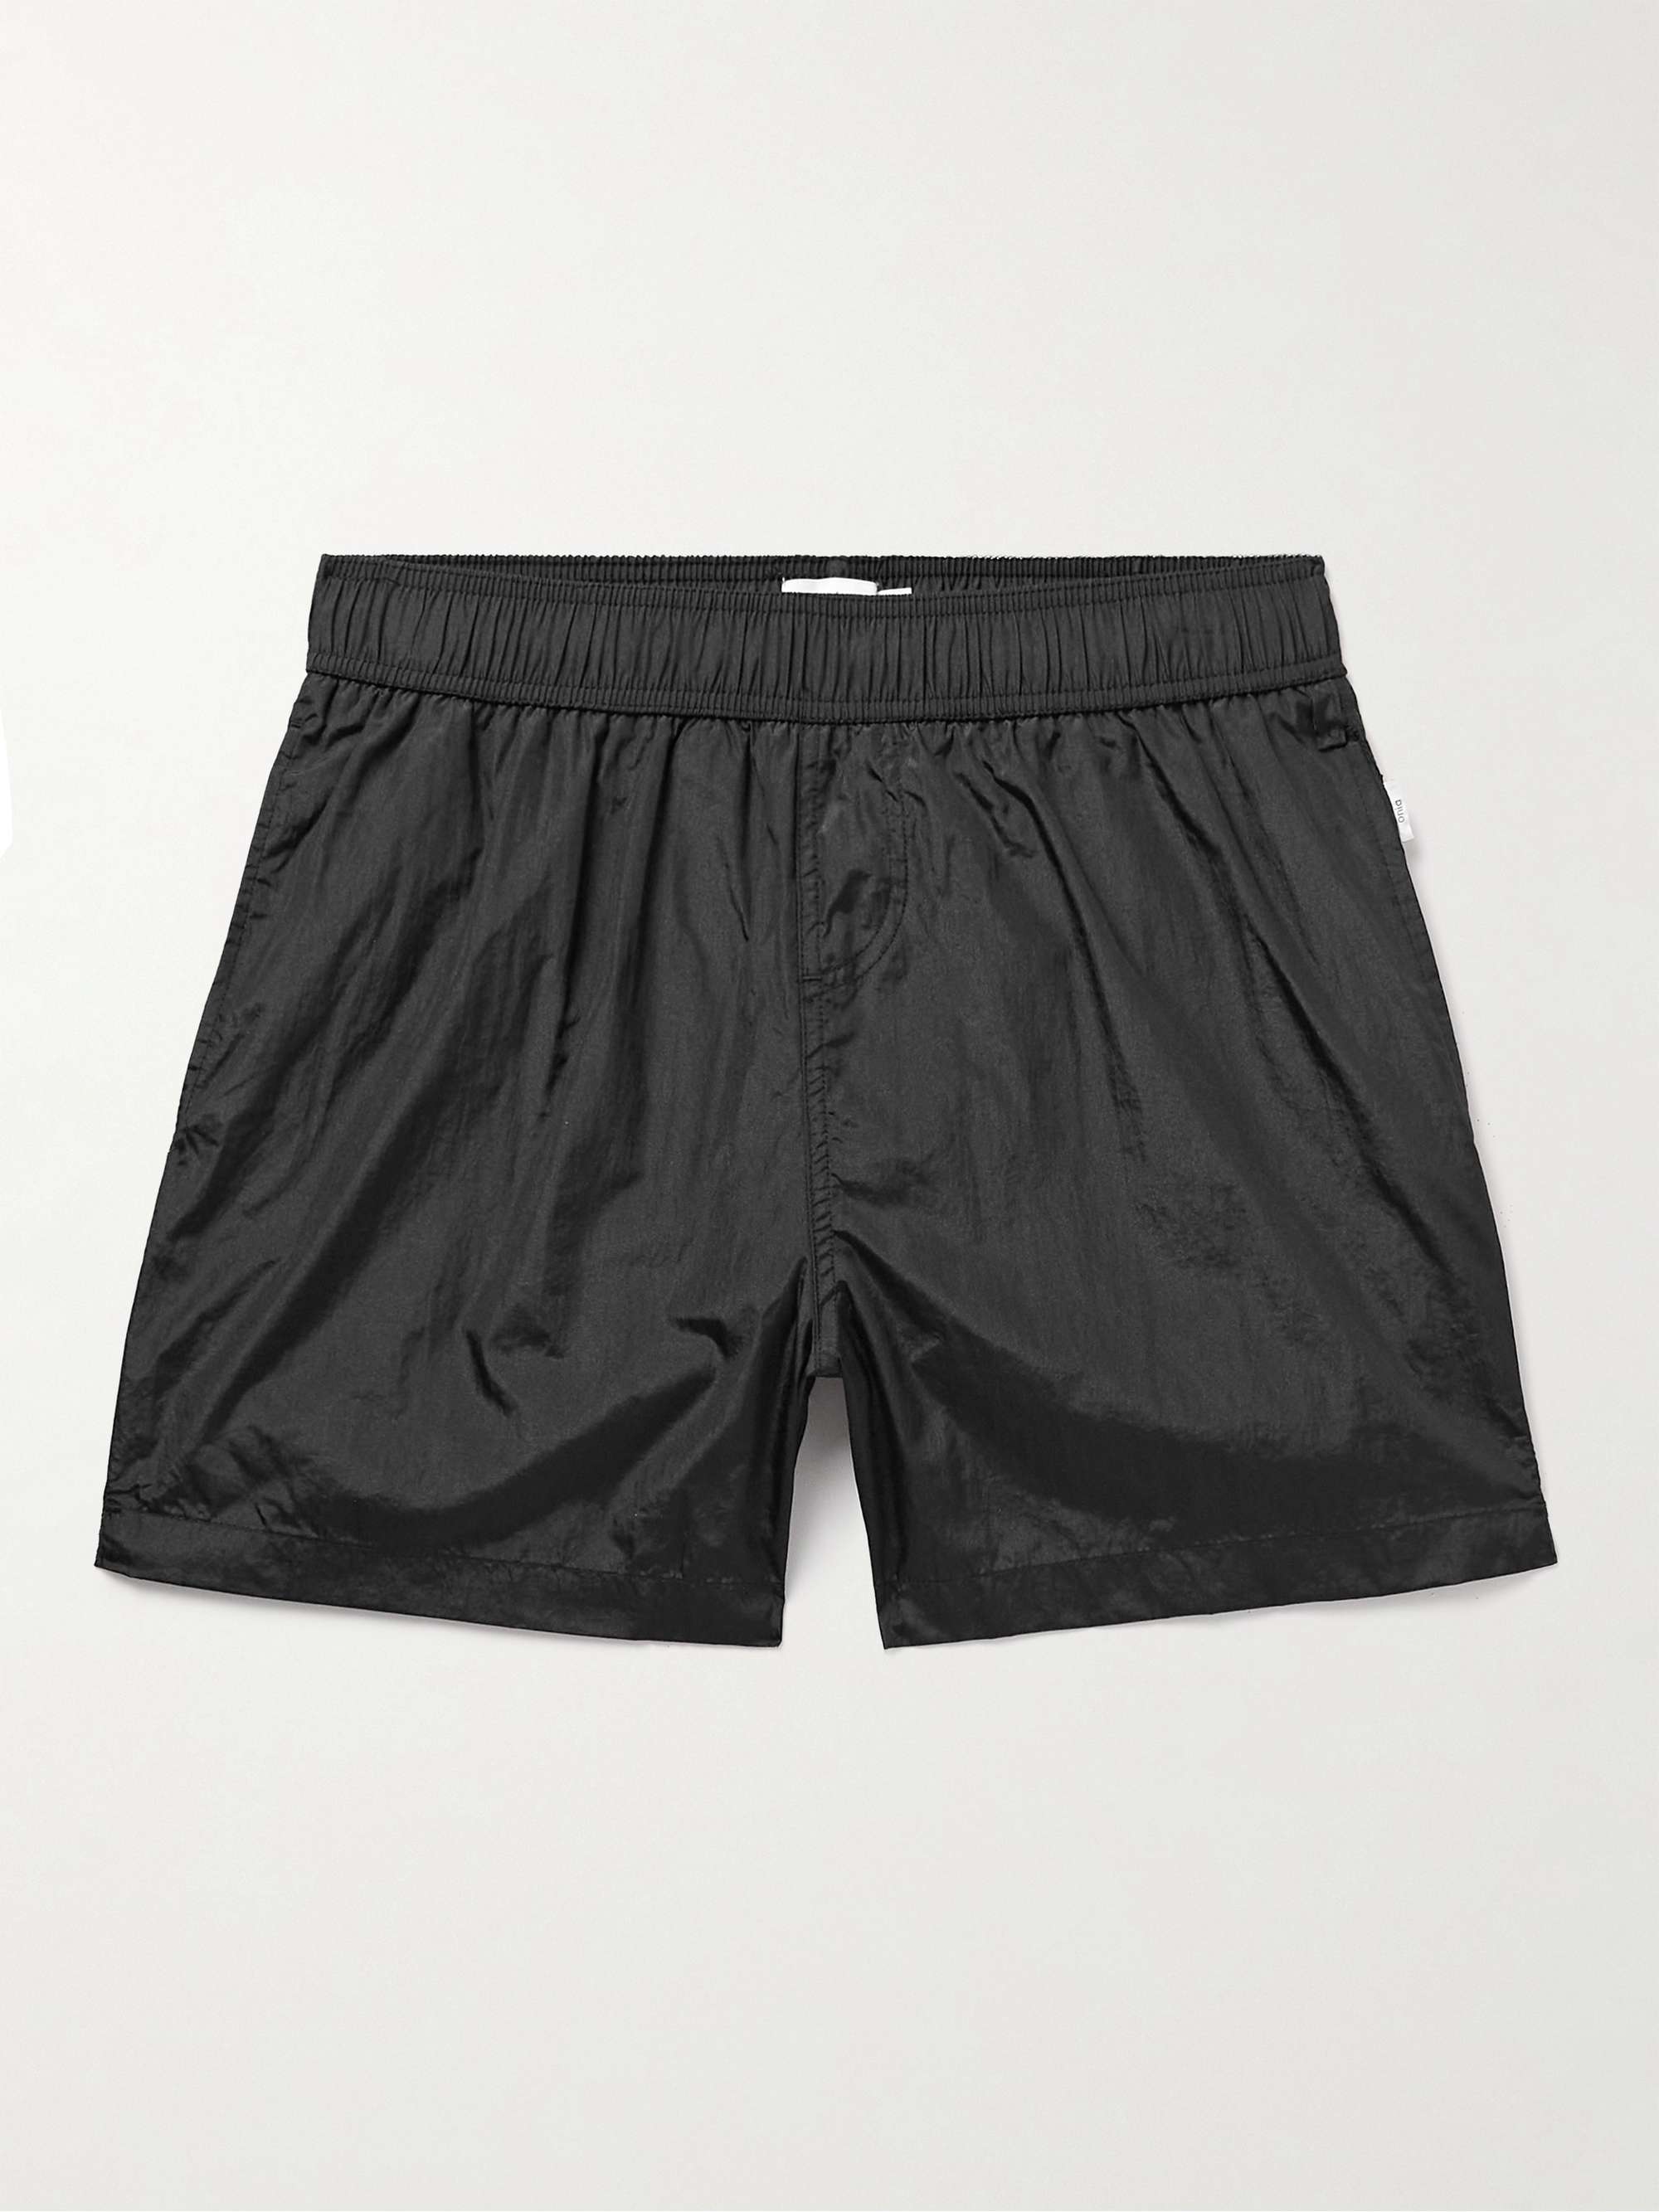 ONIA Slim-Fit Mid-Length Crinkled-Nylon Swim Shorts for Men | MR PORTER